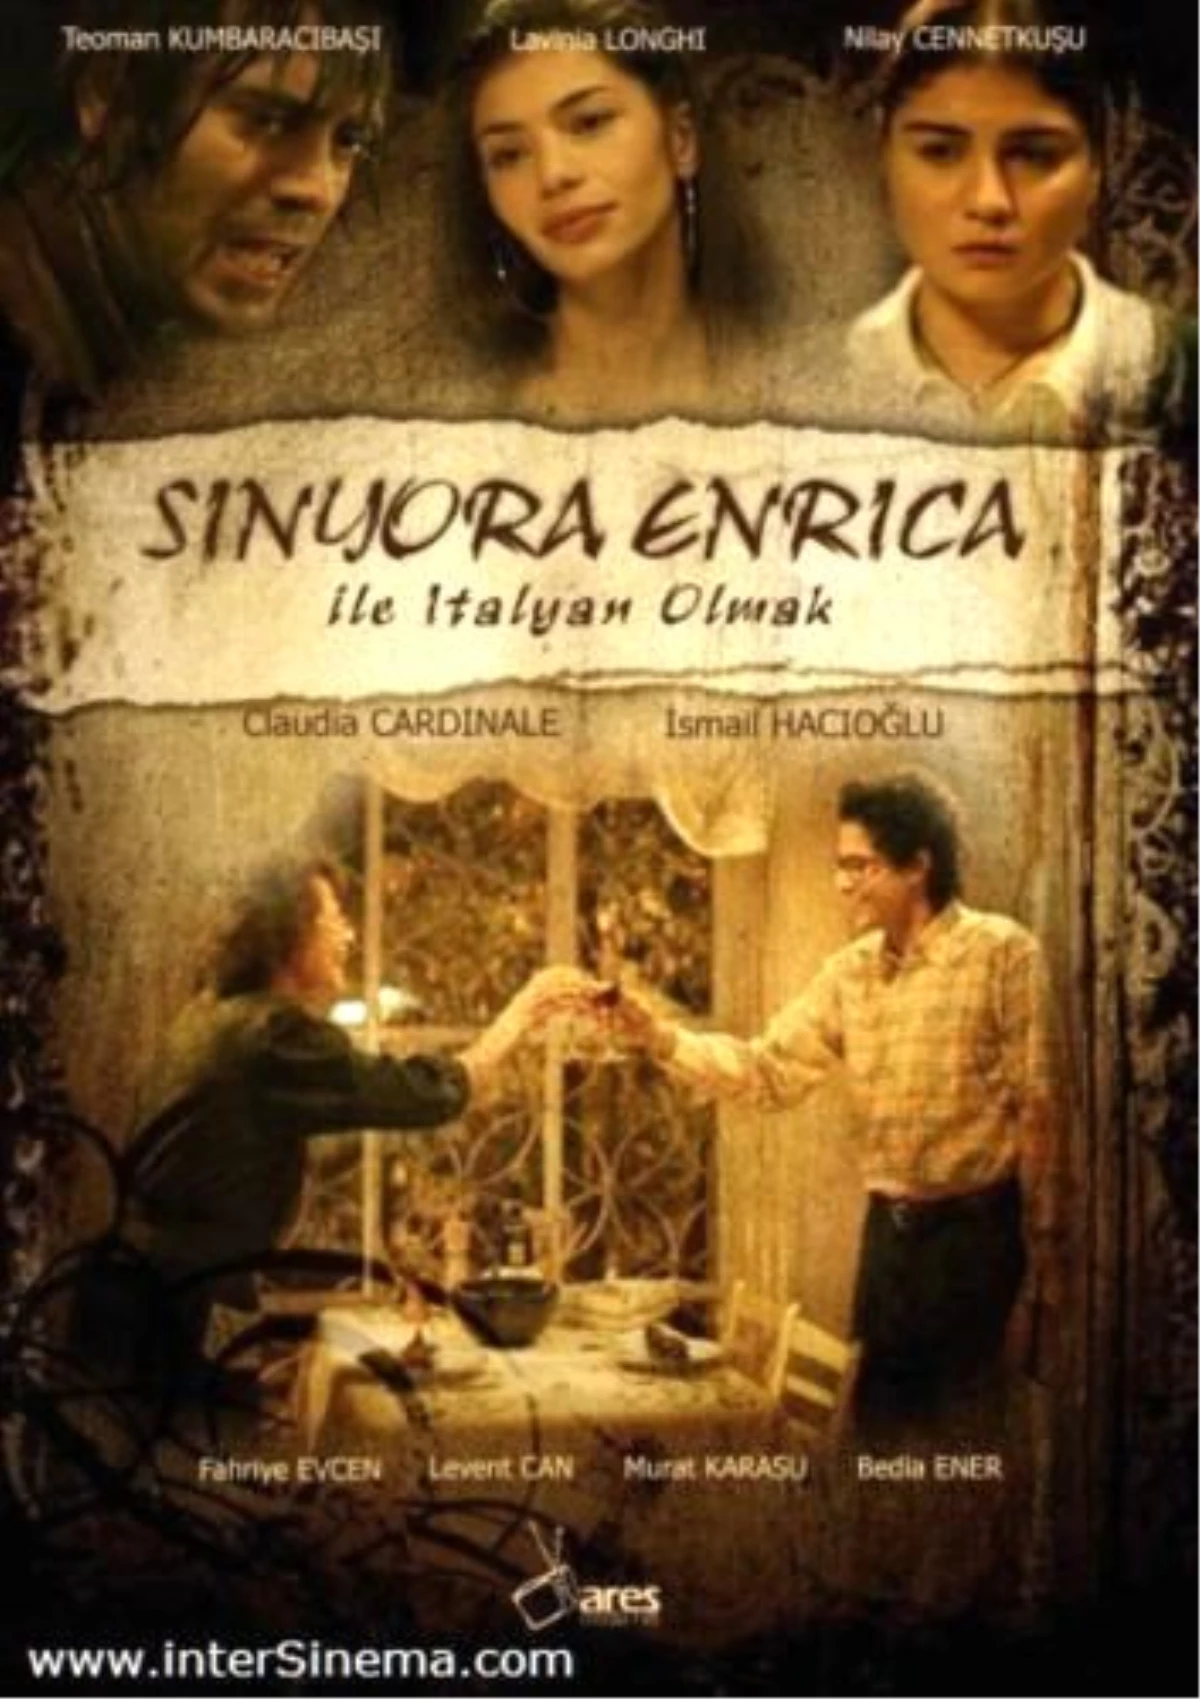 Sinyora Enrica ile İtalyan Olmak Filmi